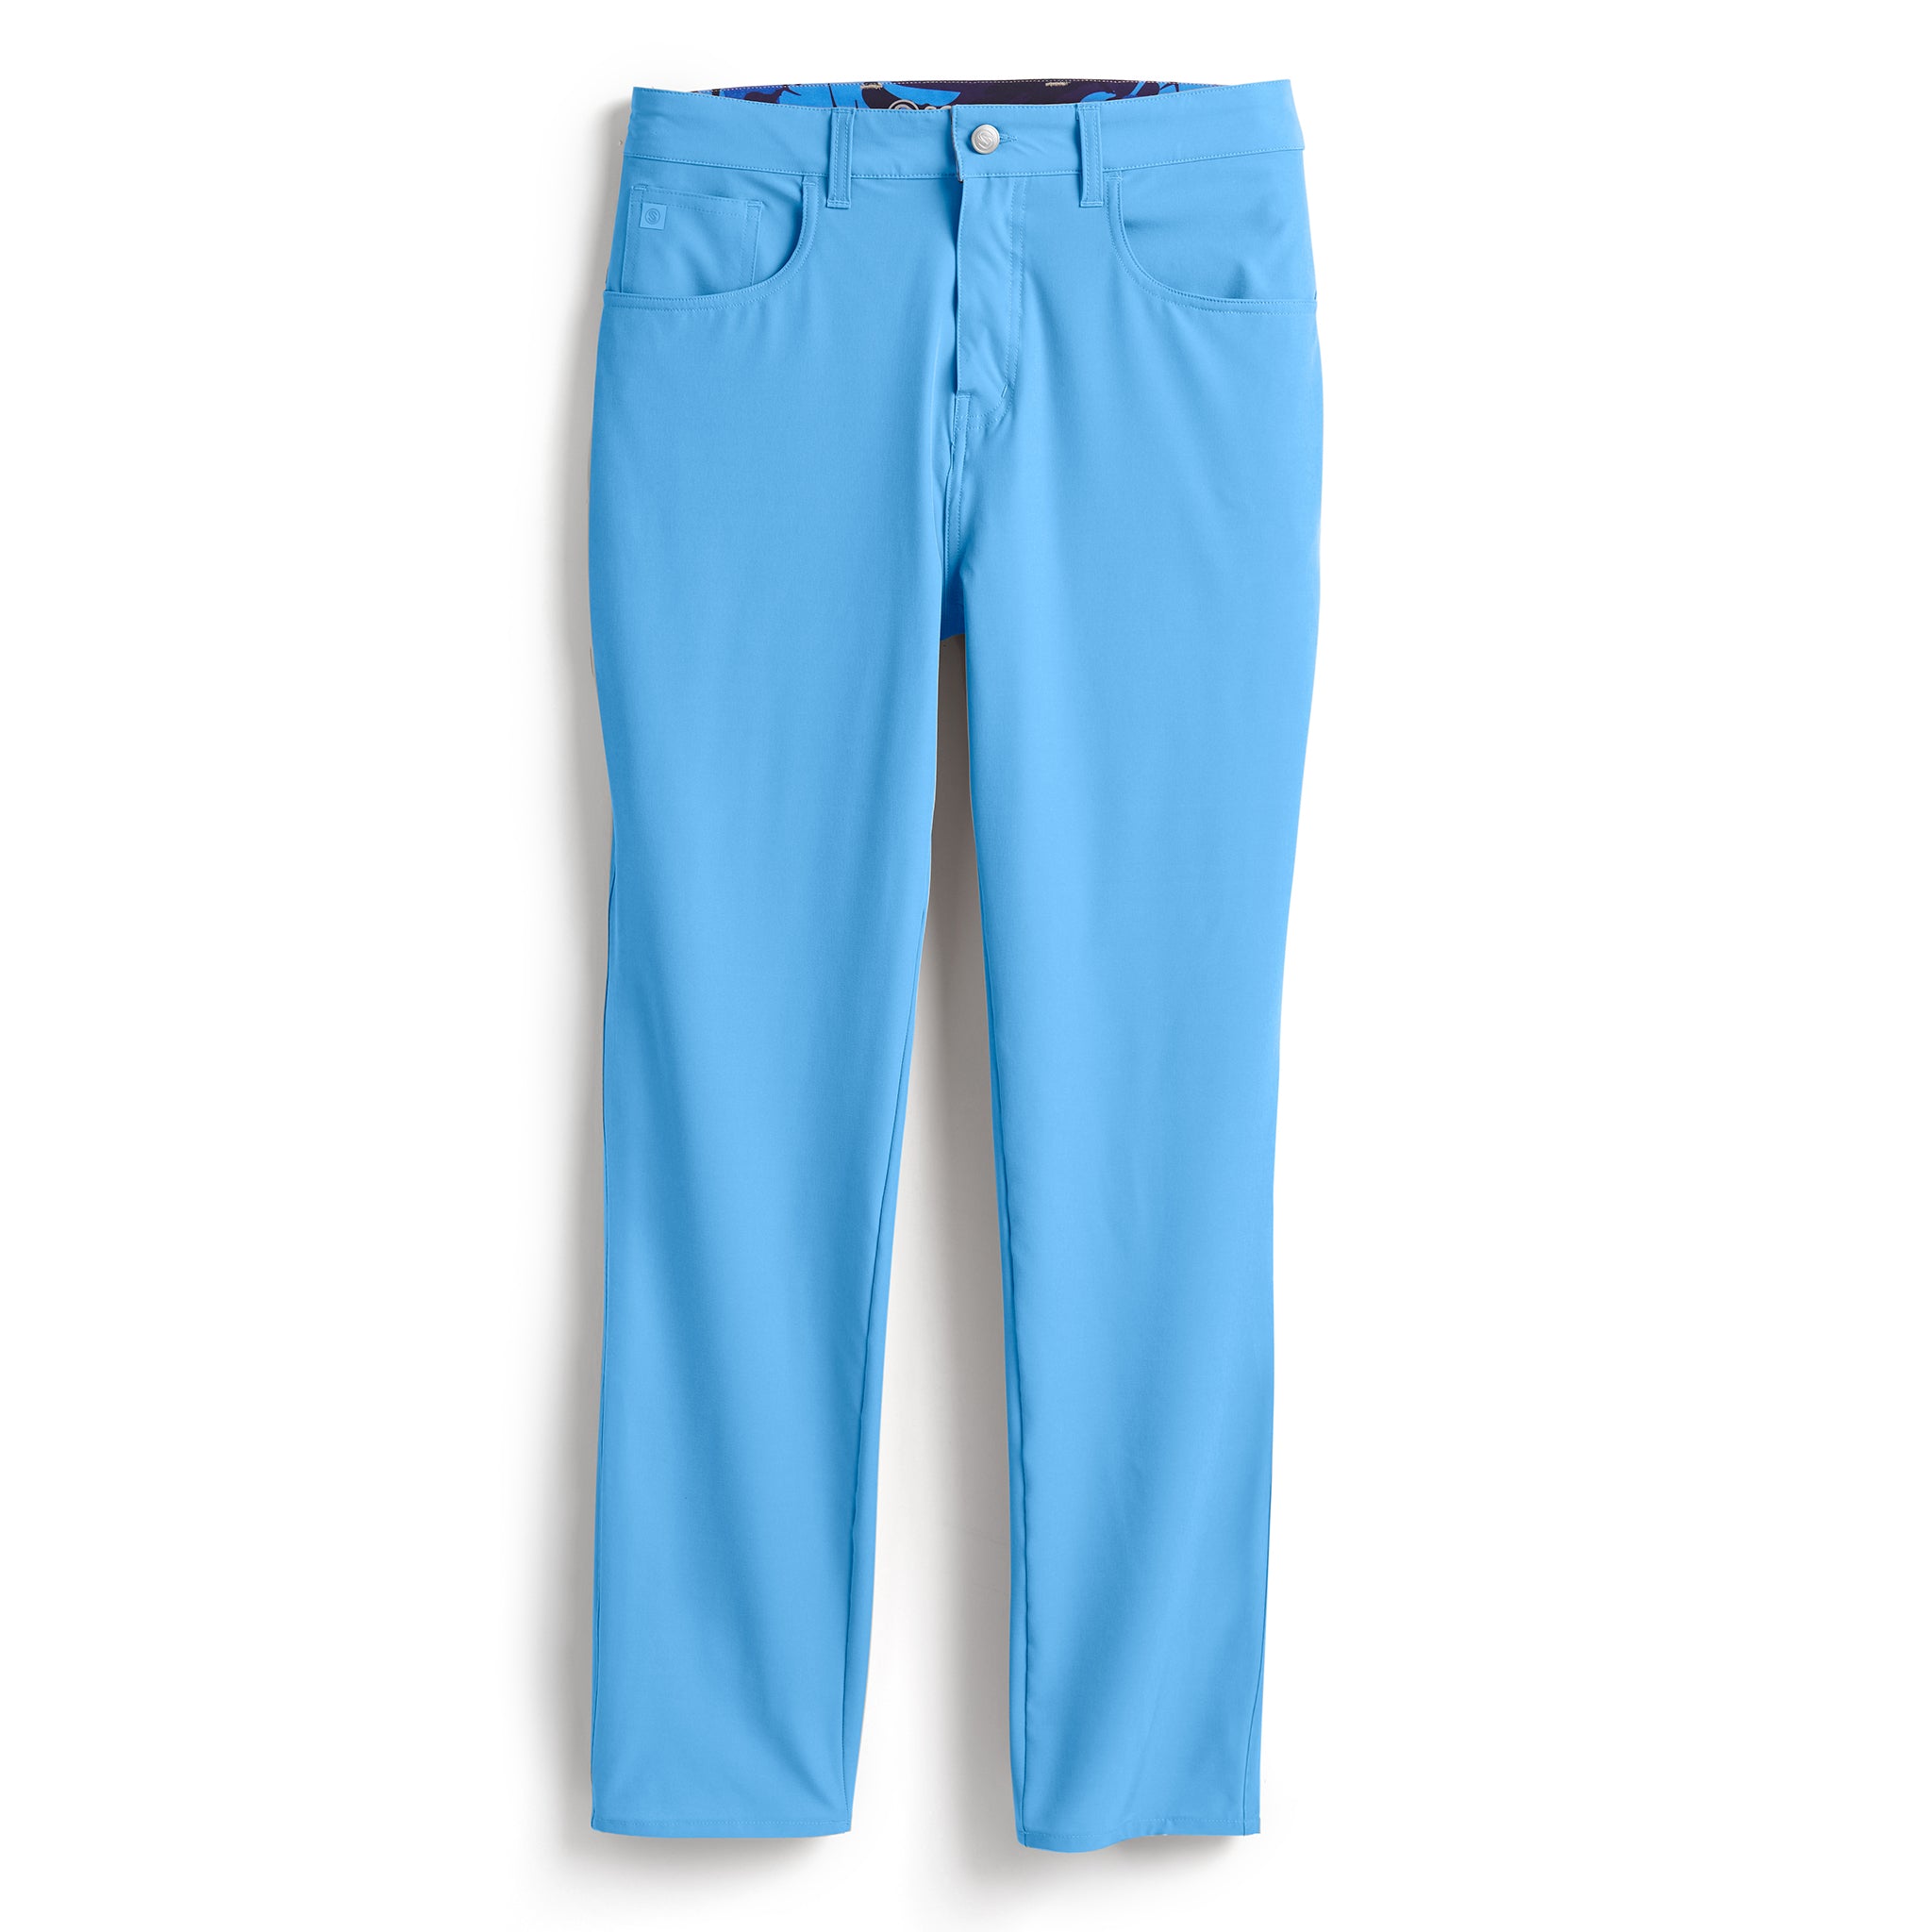 Light Blue Pants - Cute Chambray Pants - Wide-Leg Pants - Lulus